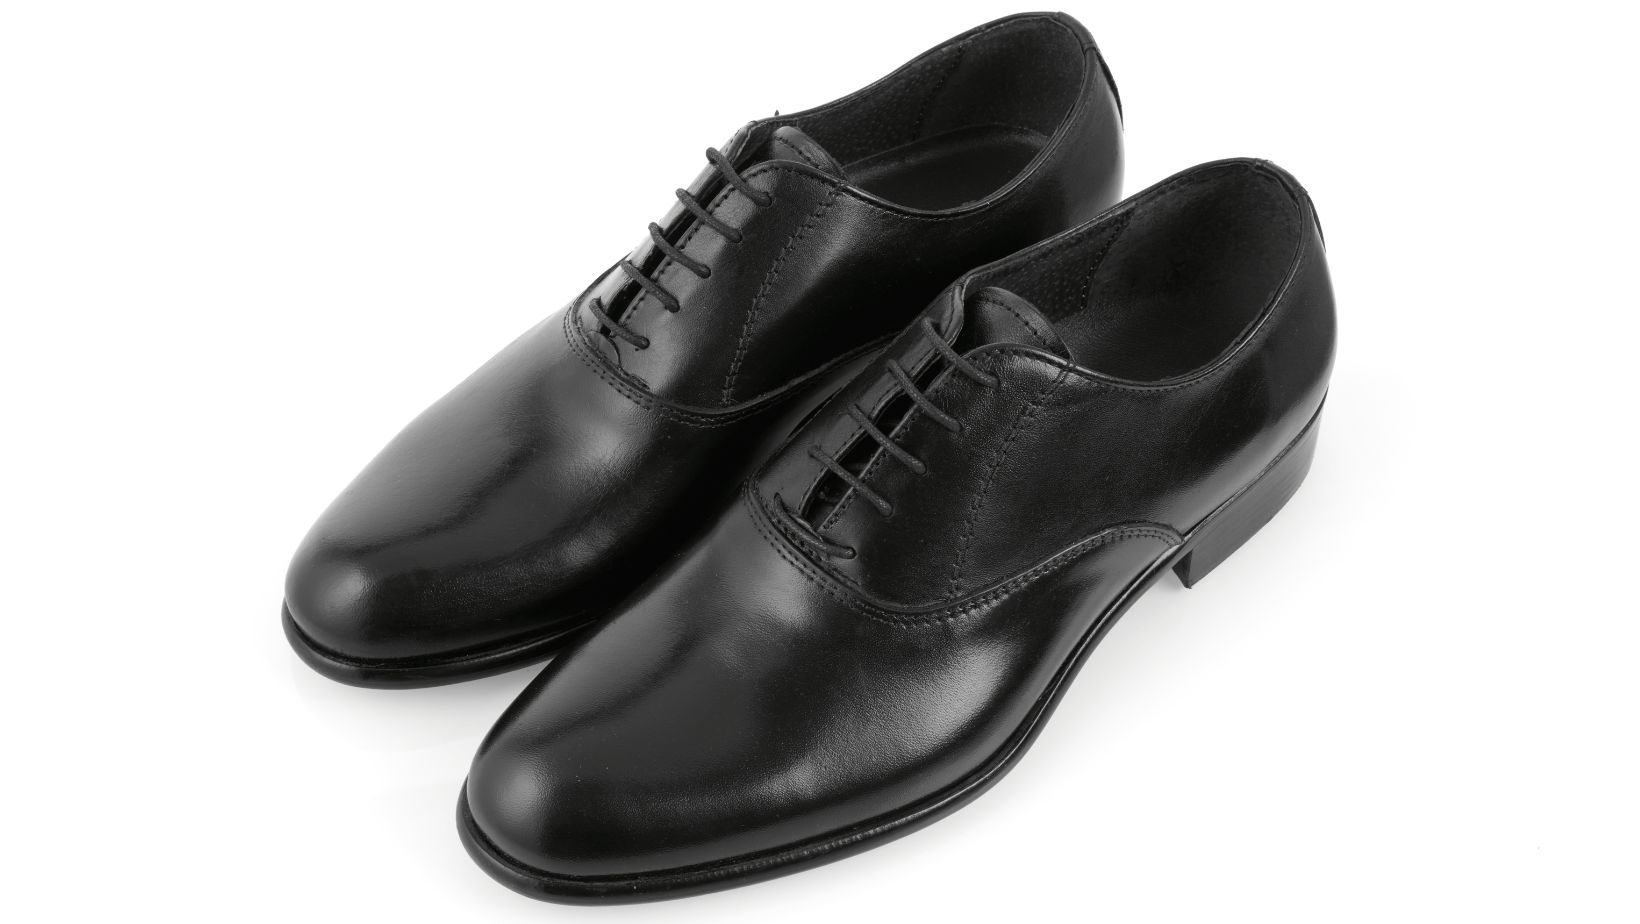 Quality men's dress shoes